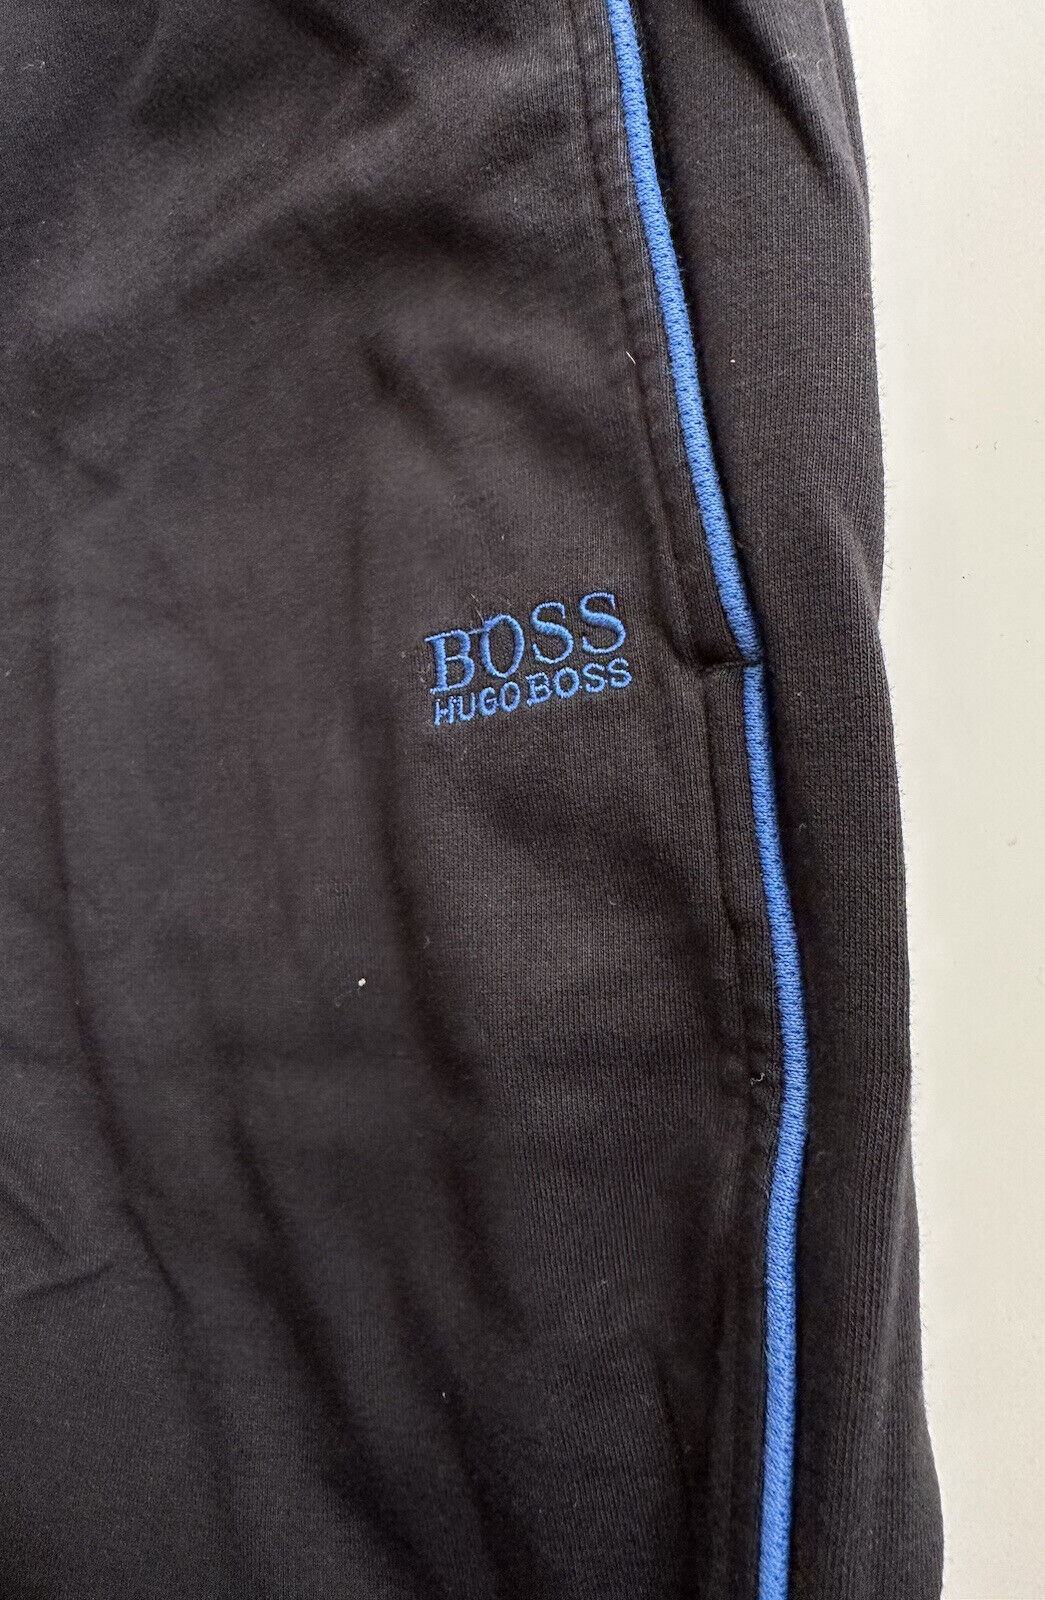 Черные повседневные брюки Boss Hugo Boss, маленькие